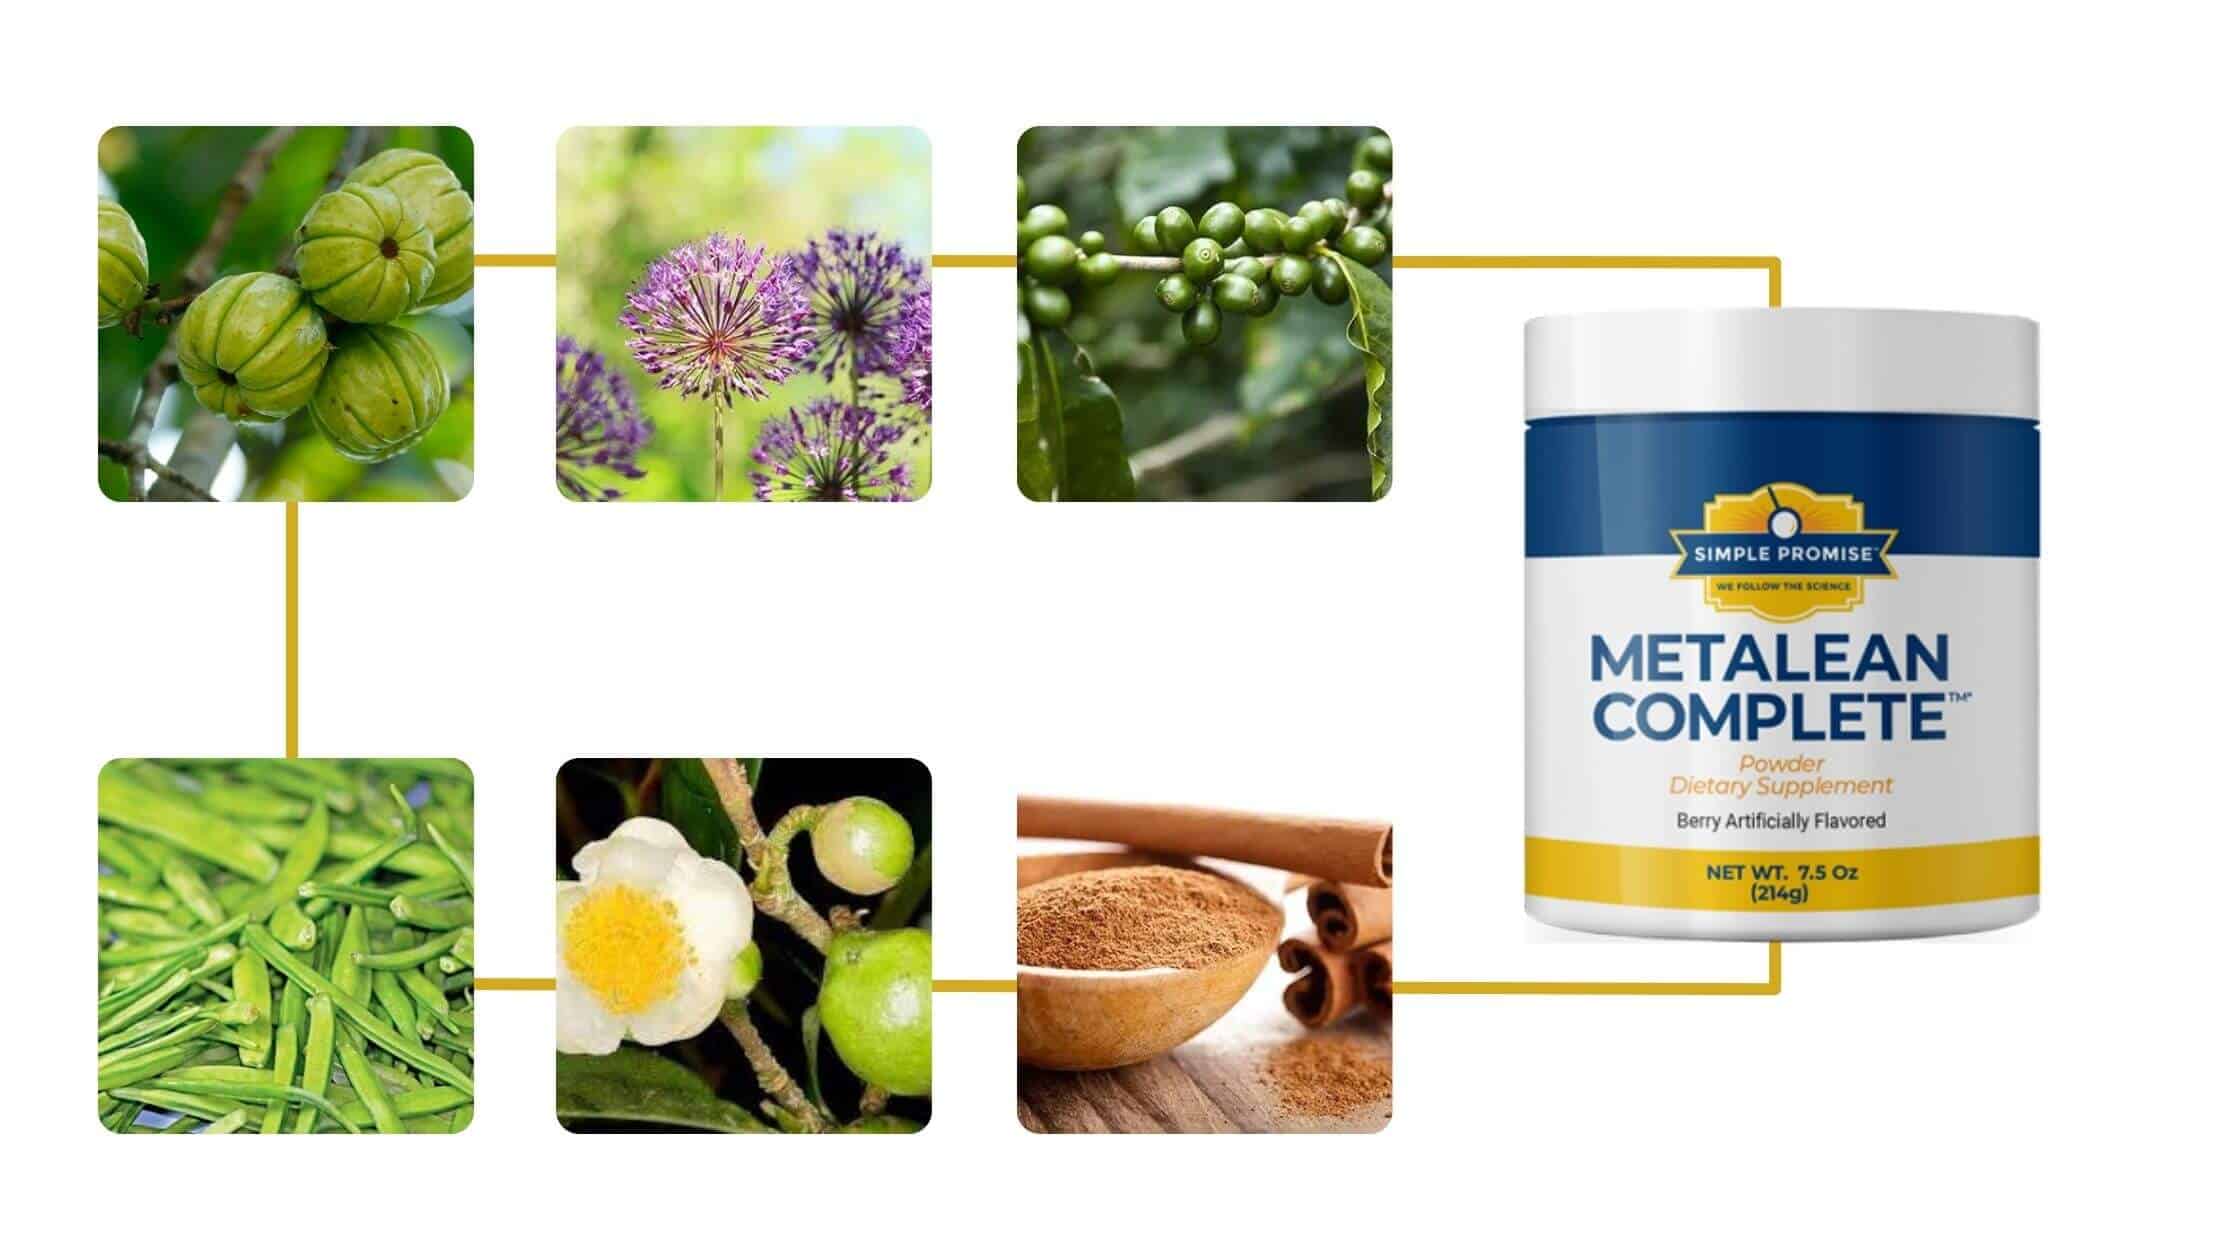 MetaLean Complete Ingredients